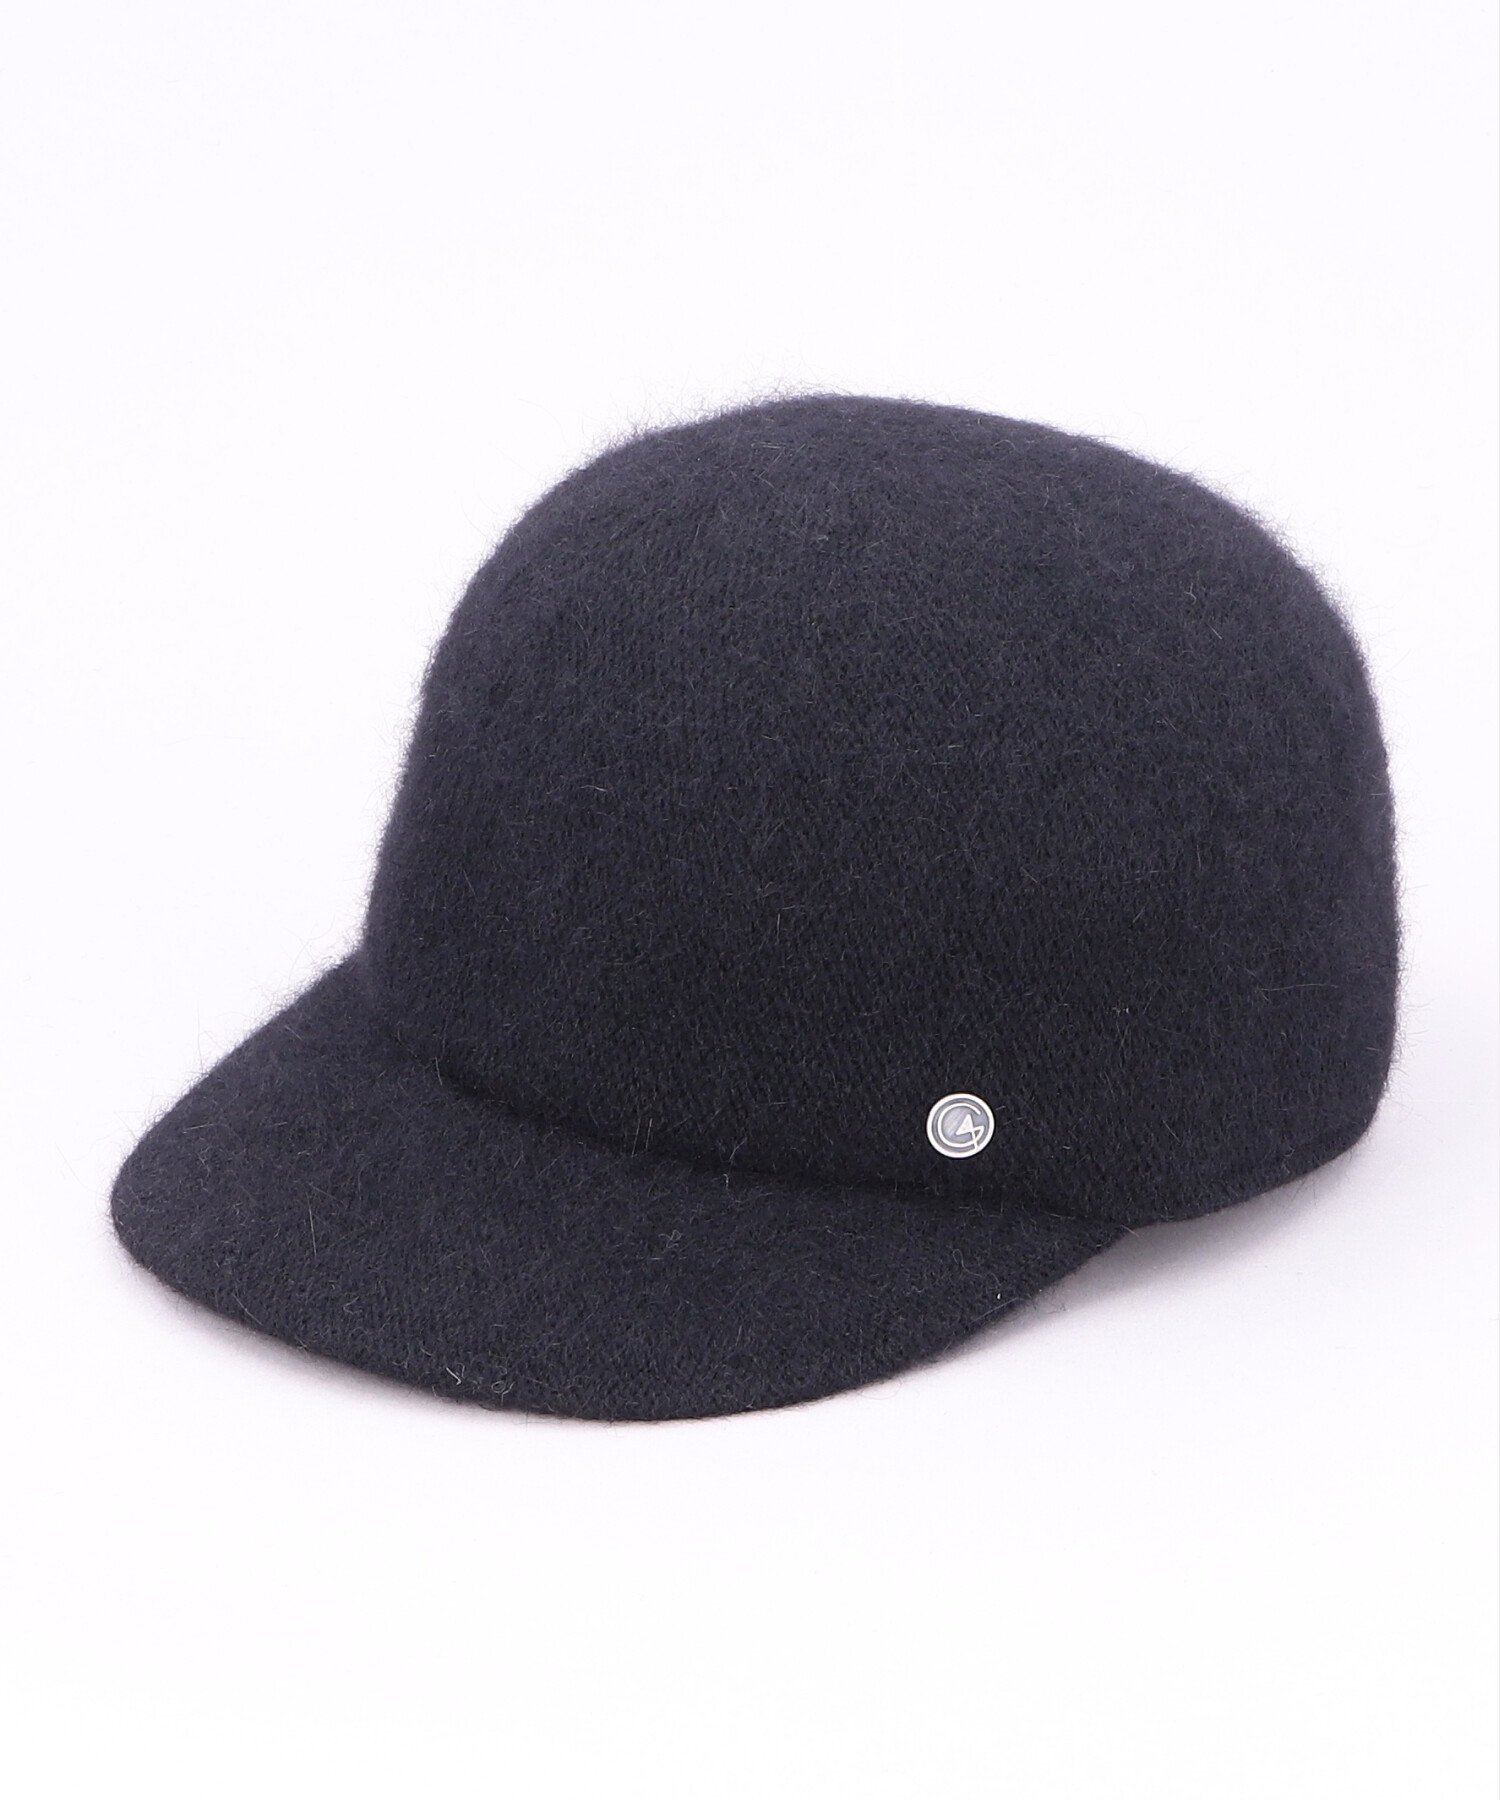 カシラ CA4LA ANGORA BALL CAP3 カシラ 帽子 キャップ ブラック ホワイト グレー【送料無料】